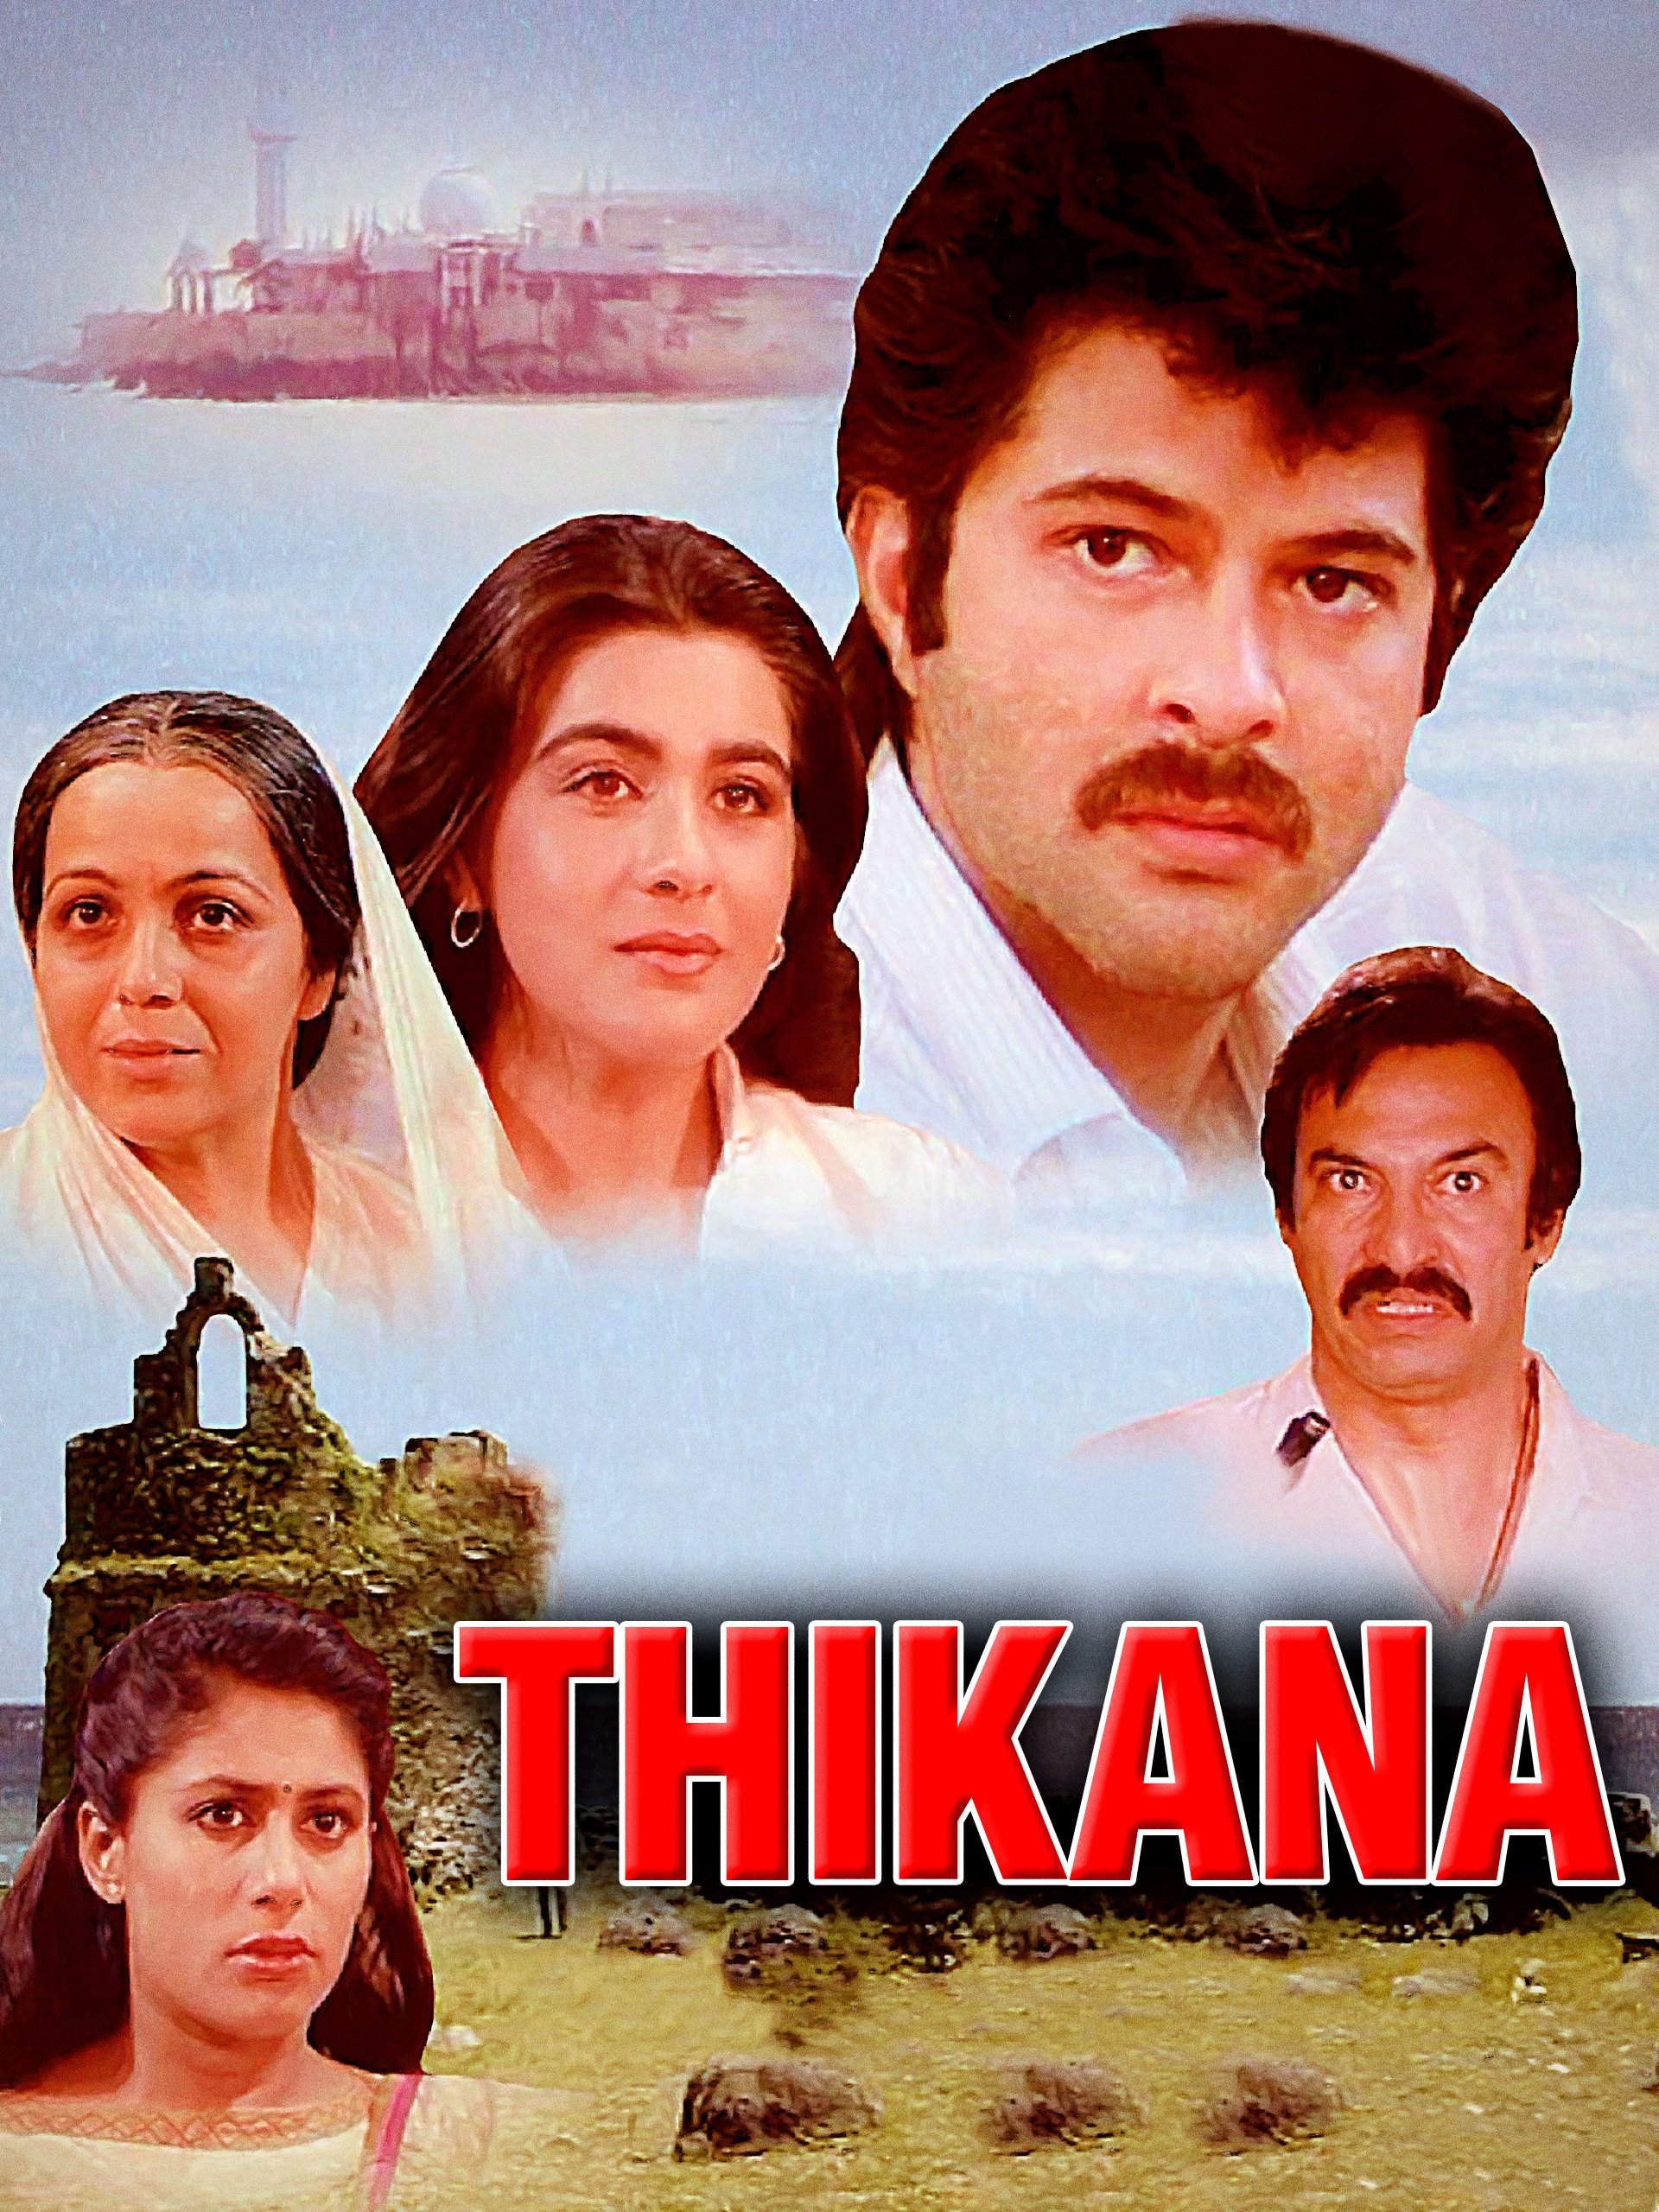 Thikana 1987 3886 Poster.jpg